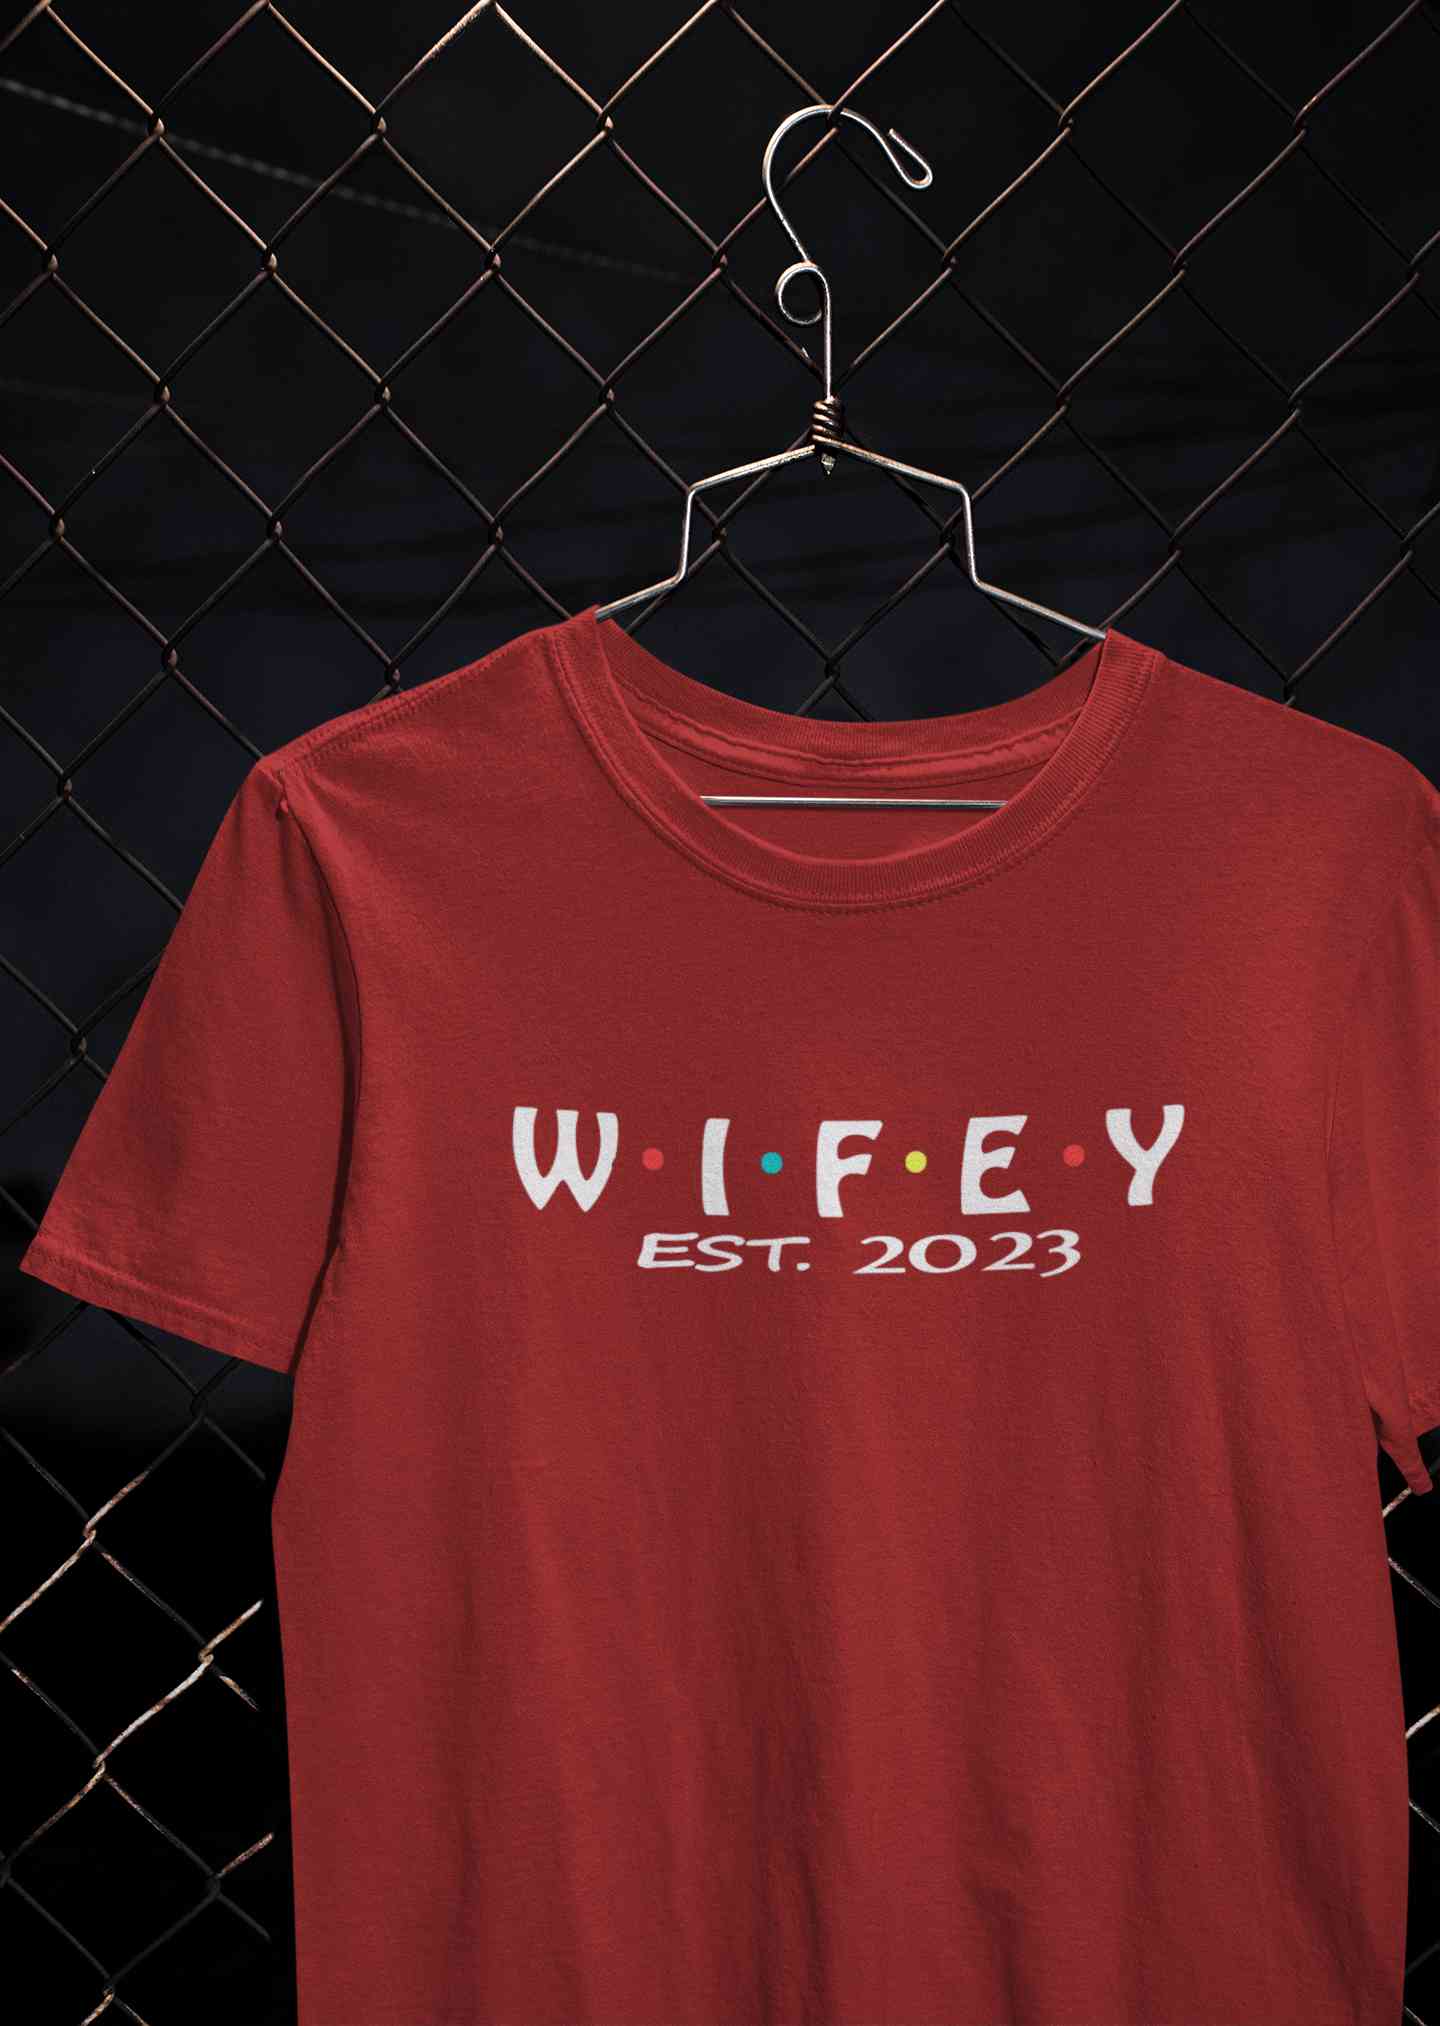 Hubby Wifey Est 2023 Couple Half Sleeves T-Shirts -FunkyTeesClub